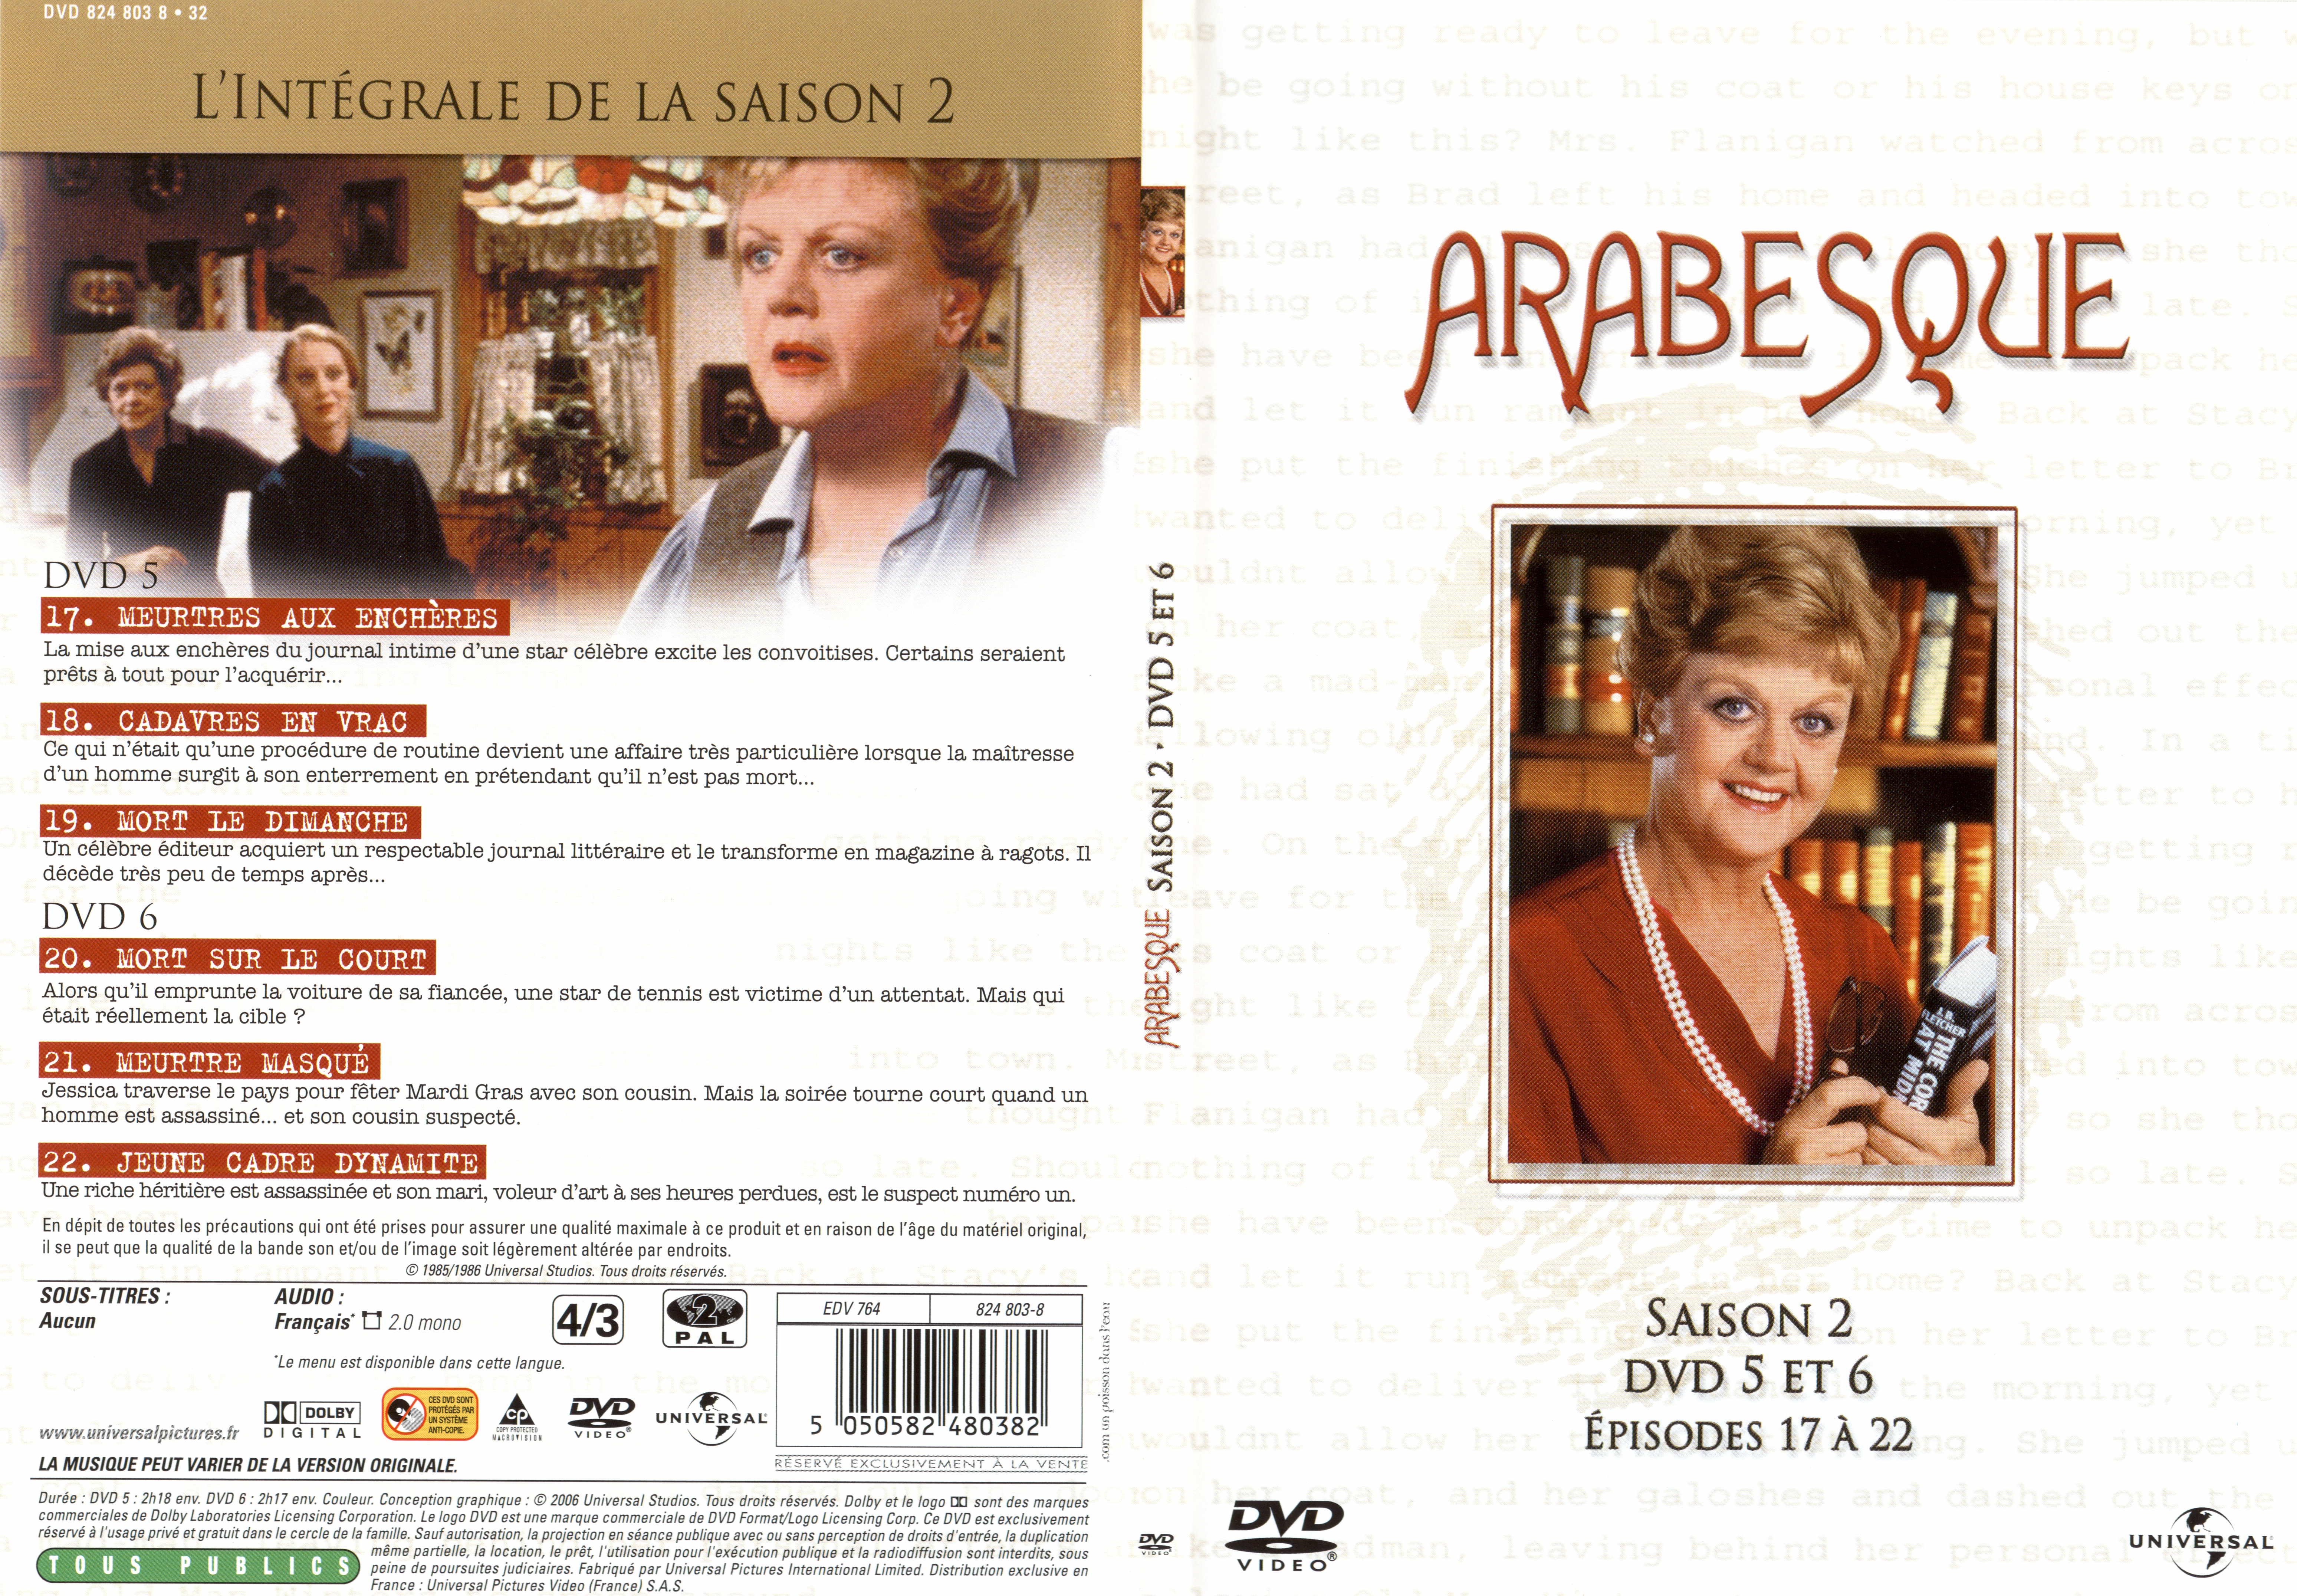 Jaquette DVD Arabesque Saison 2 DVD 5 et 6